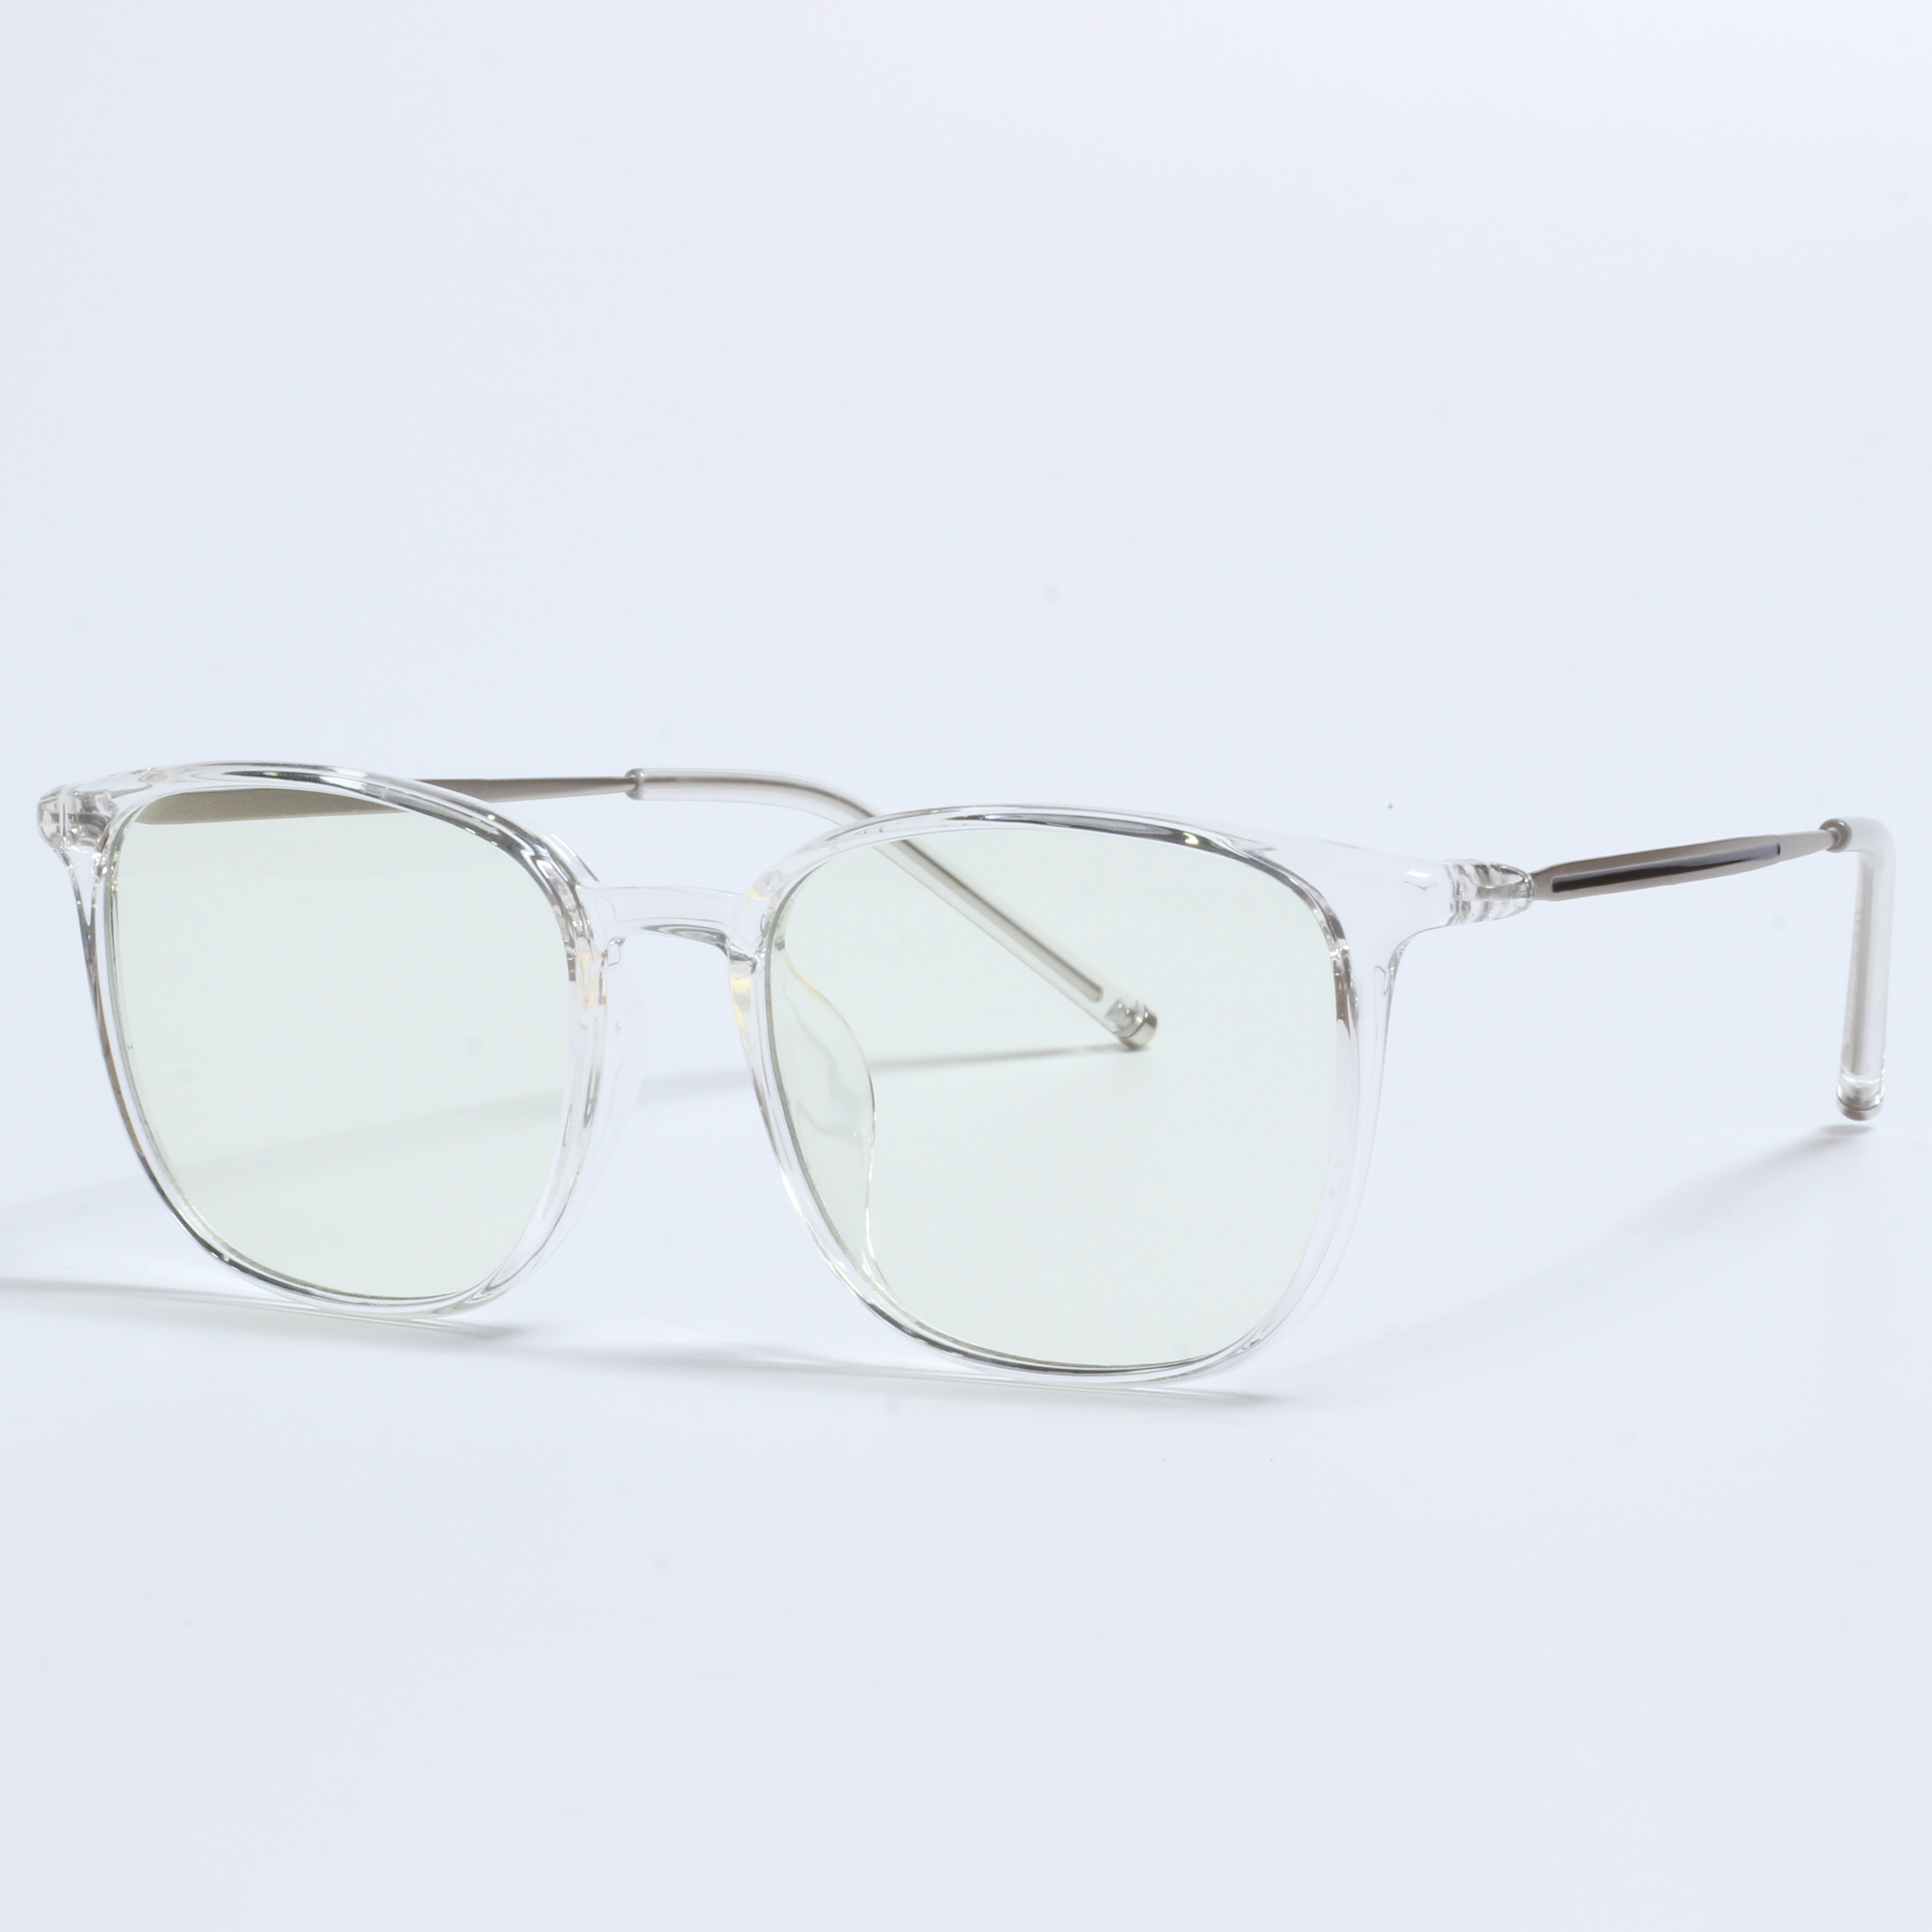 New retro lunette anti lumiere designer prescription glasses (3)